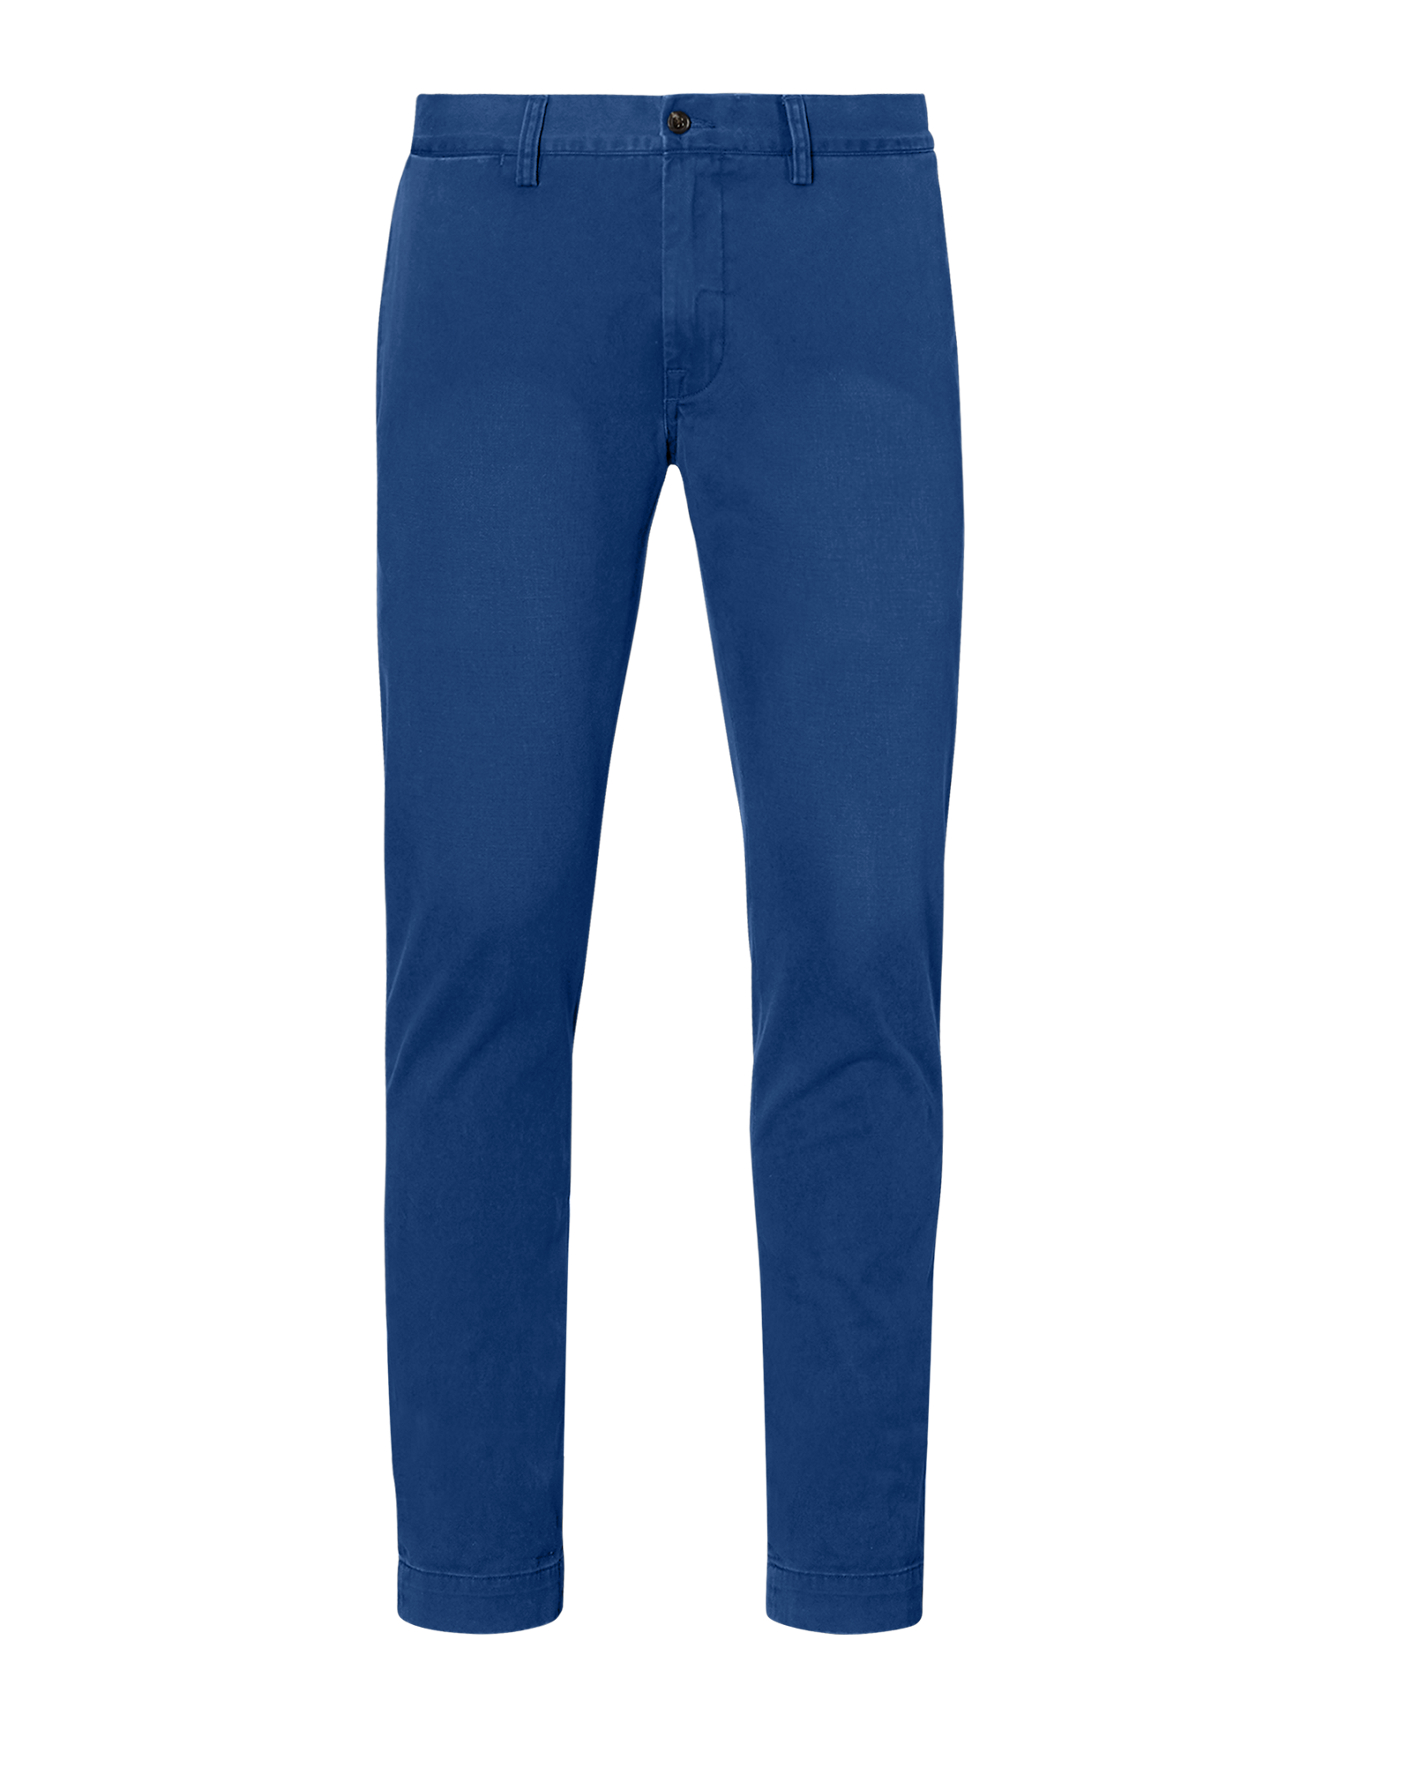 Men's Pants - Jeans, Cargo, Khaki, Corduroy | Ralph Lauren